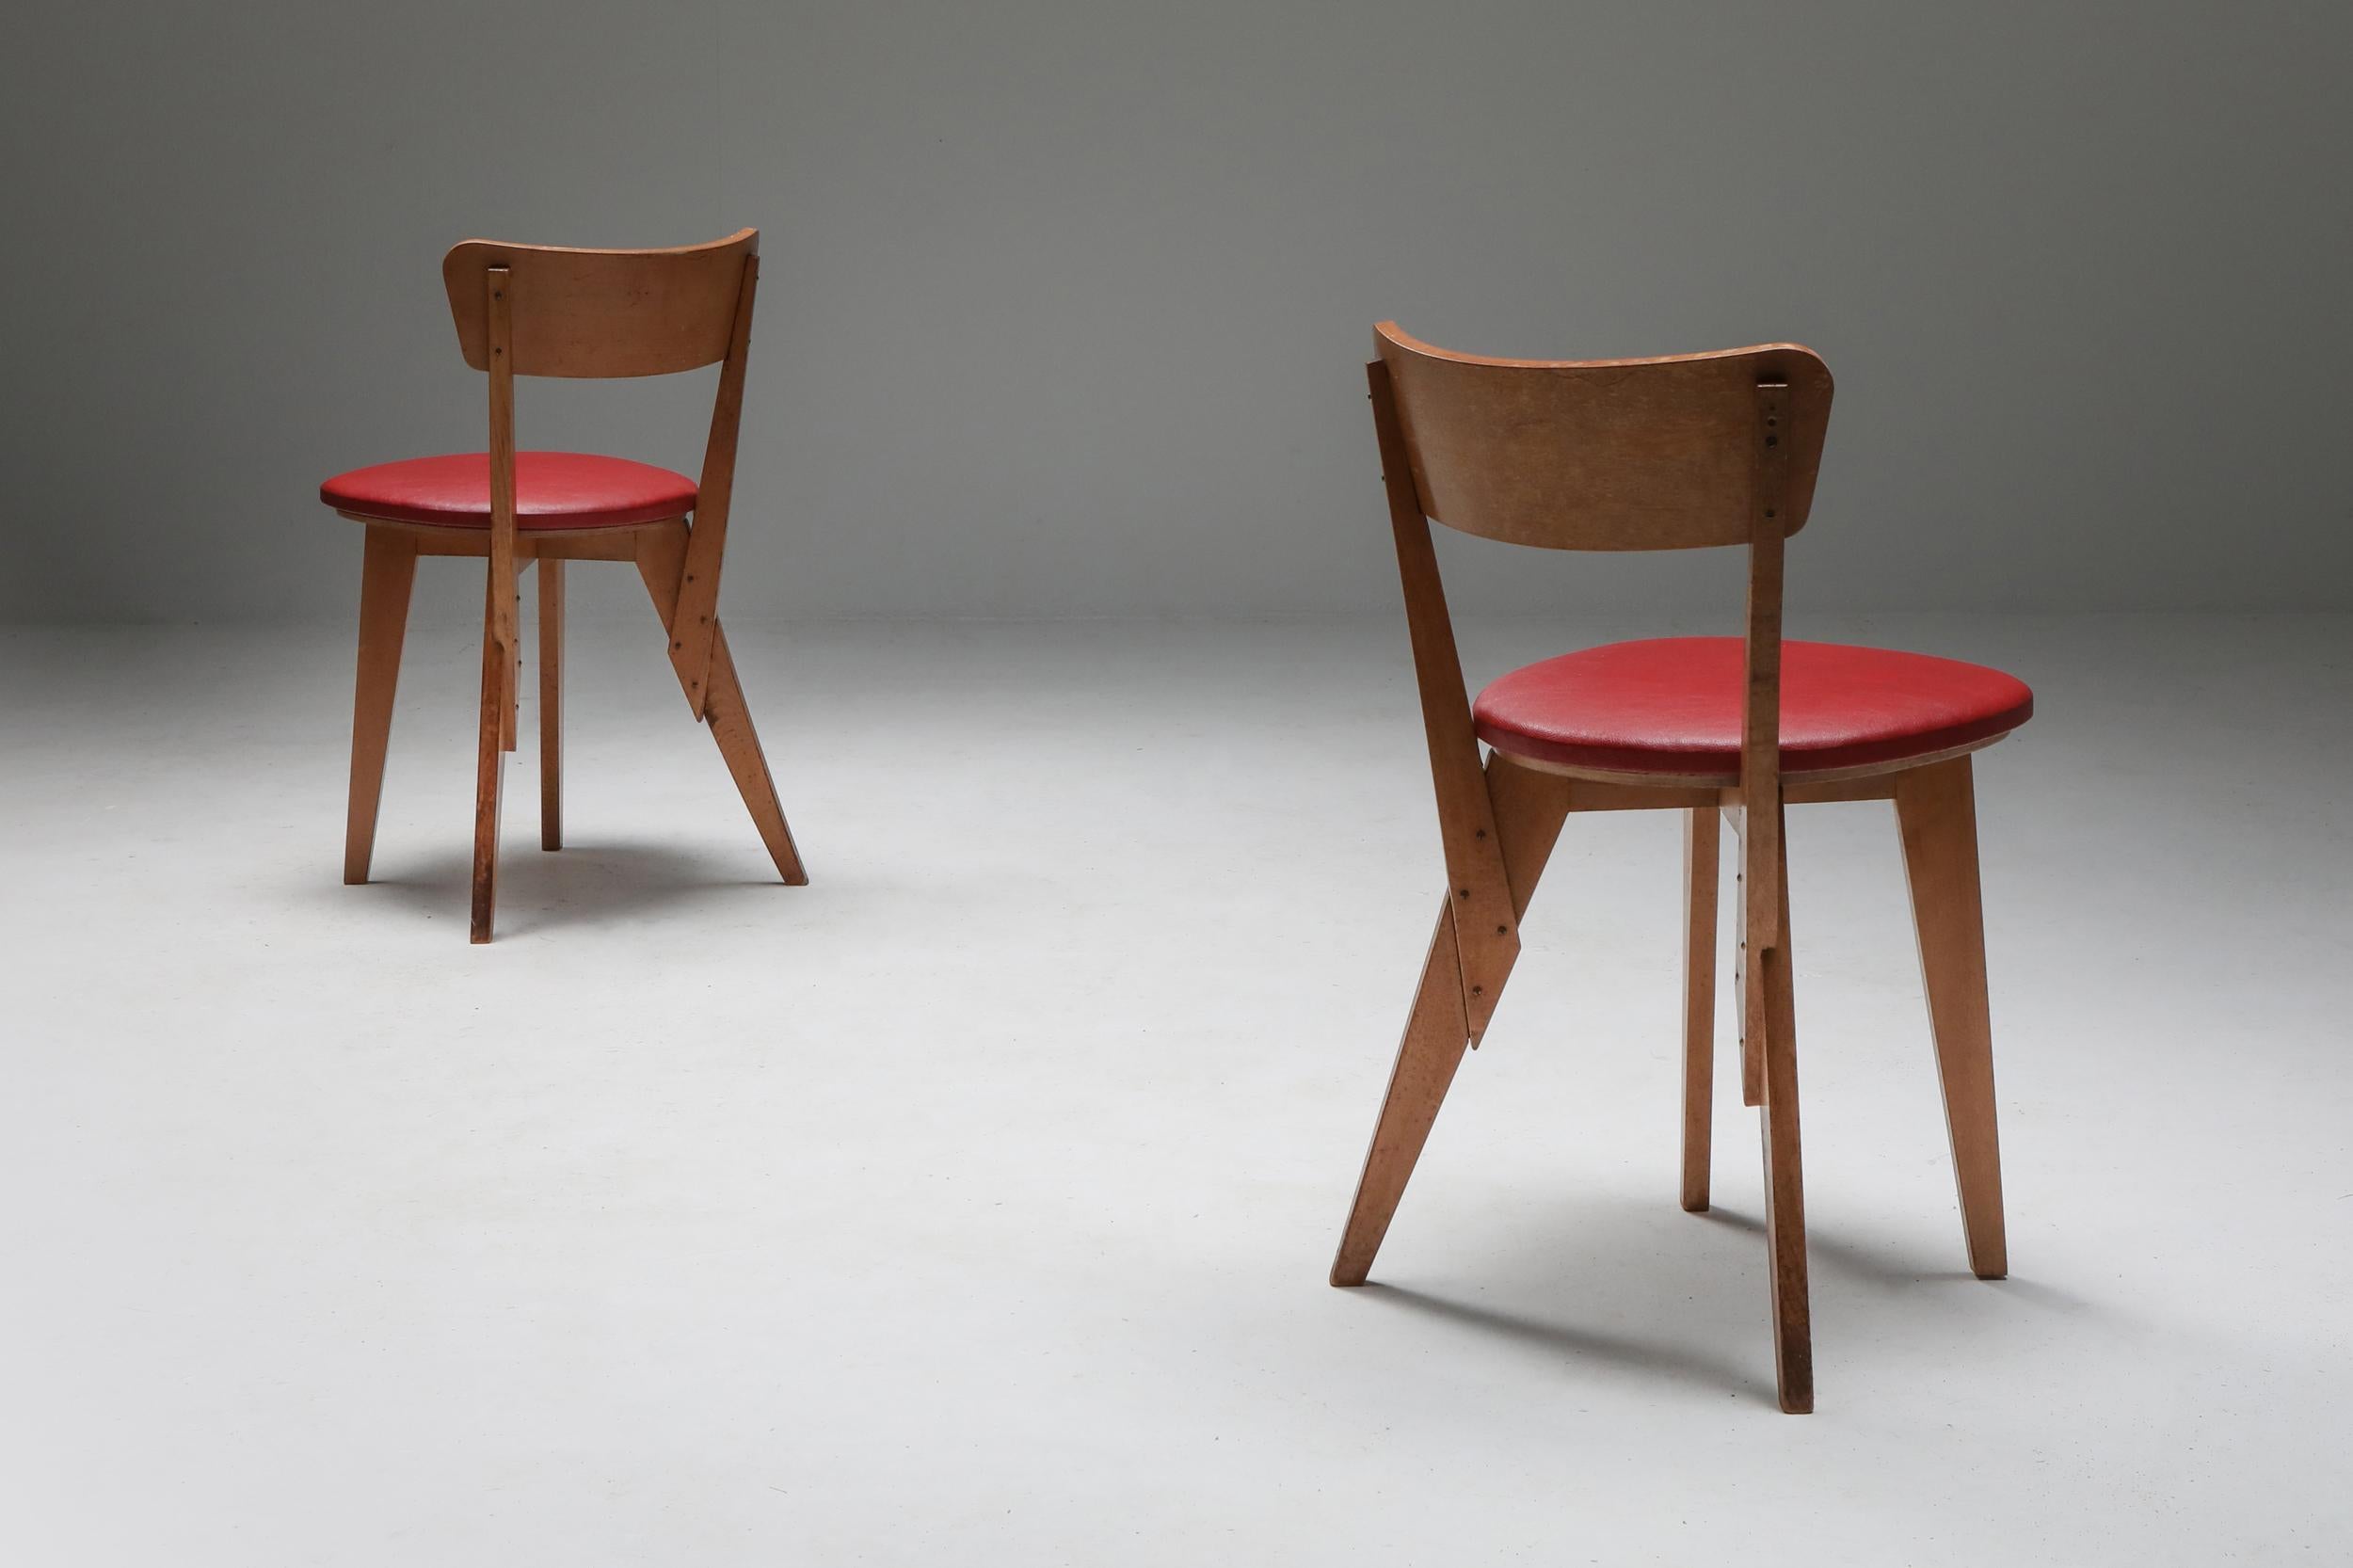 Der Prototyp des Stuhls von Wim Den Boon für 'Goed Wonen' 1947. 
Bedeutendes und historisches Möbelstück der niederländischen Moderne
Wim Den Boon gründete die 'Groep &' kurz nach der Befreiung der Niederlande im Jahr 1945 zusammen mit Hein Stolle